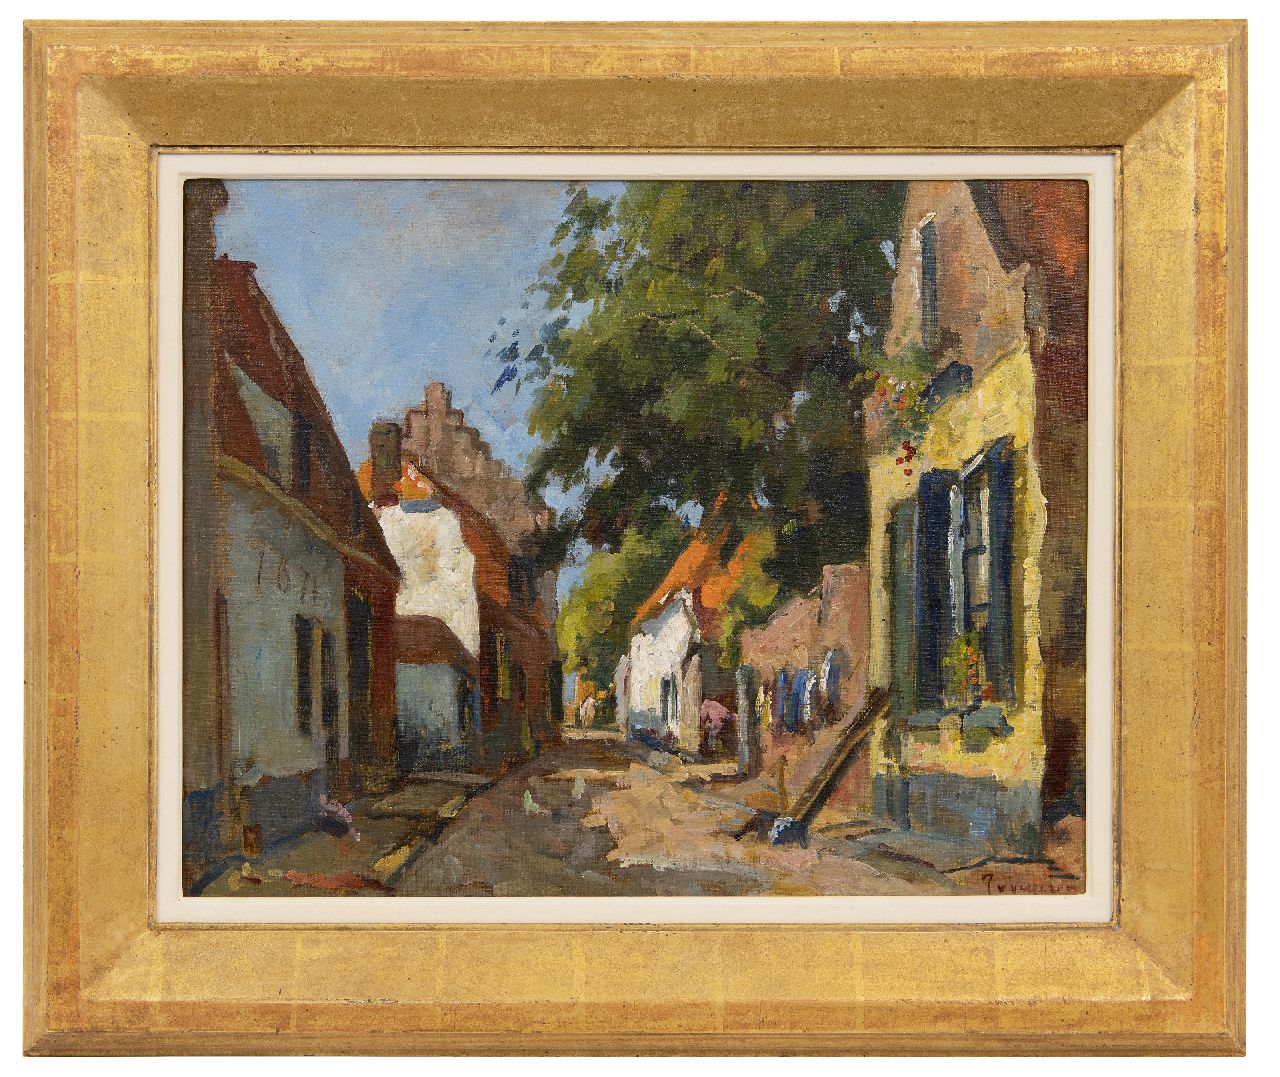 Vuuren J. van | Jan van Vuuren | Schilderijen te koop aangeboden | Zonnig dorpsstraatje, olieverf op doek 40,0 x 50,1 cm, gesigneerd rechtsonder